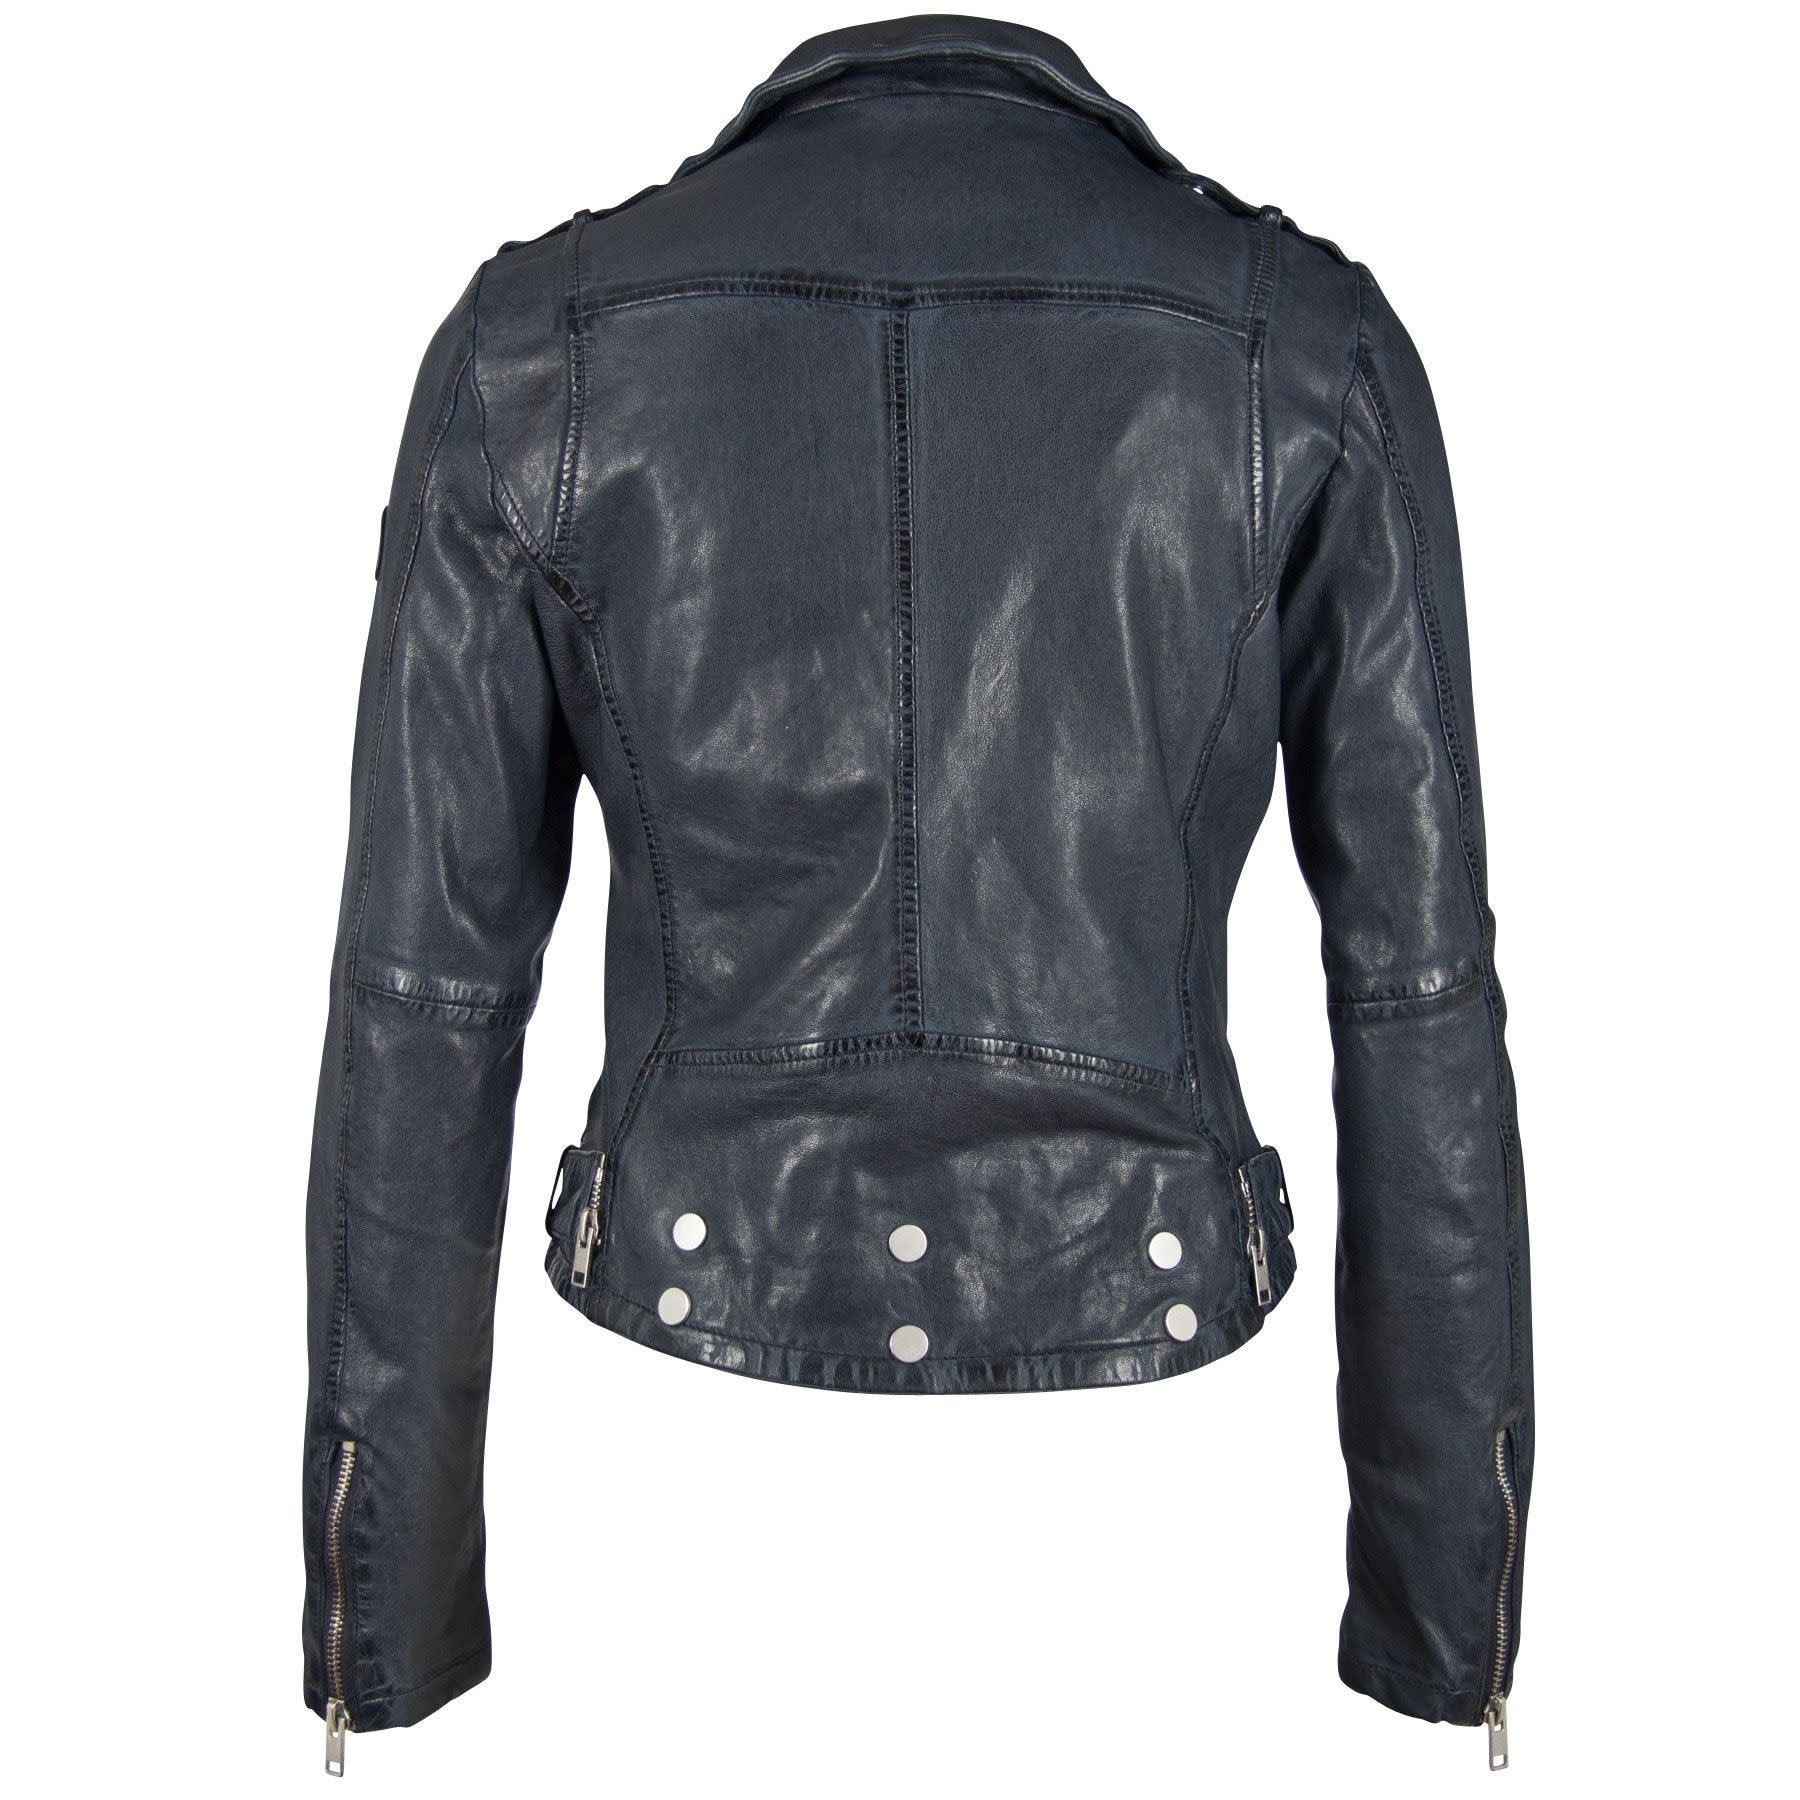 Wild 2 Leather Jacket